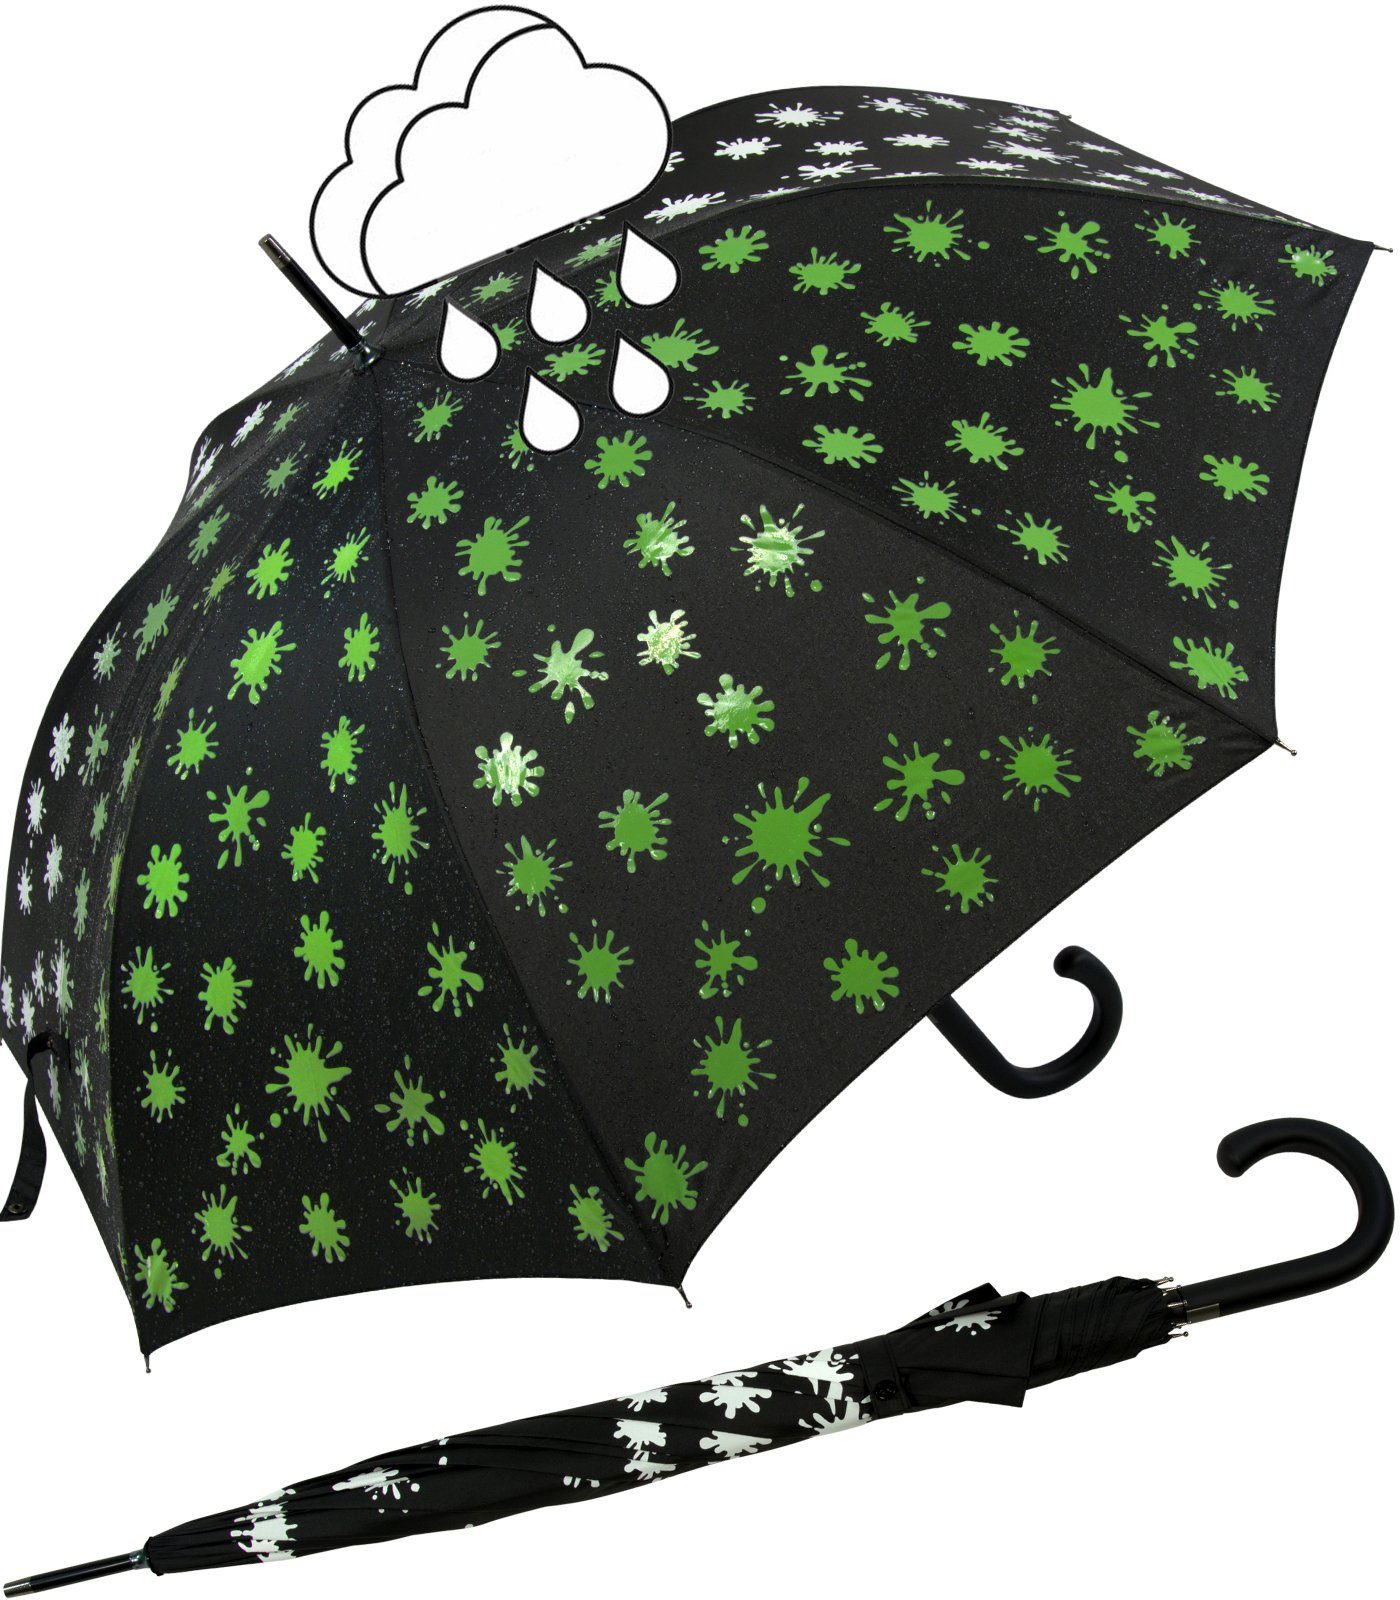 iX-brella Langregenschirm iX-brella Damenschirm mit Automatik und Wet Print, Farbänderung bei Nässe - Farbkleckse neon-grün schwarz-weiß-neongrün